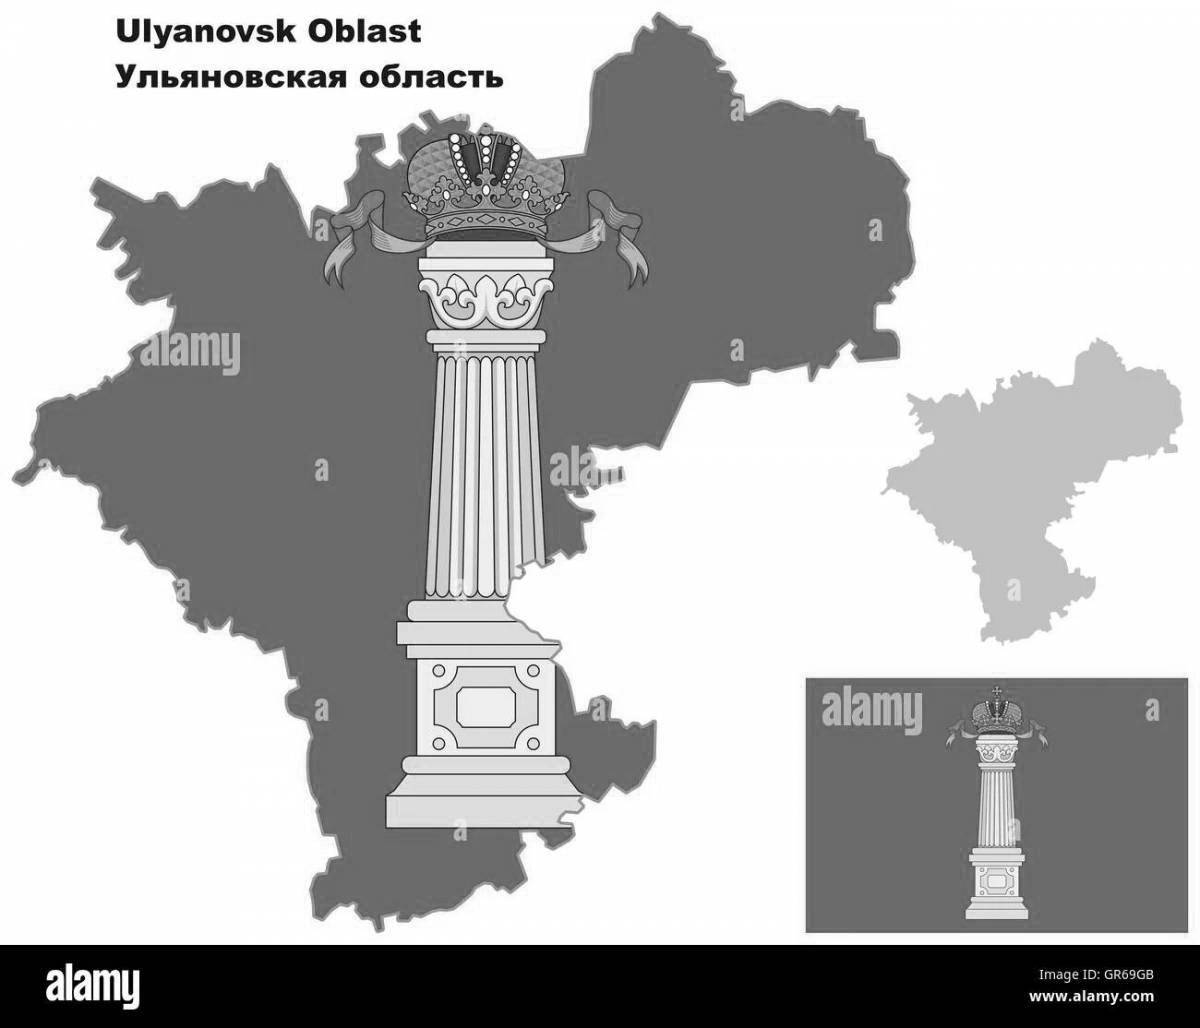 Увлекательная раскраска флаг ульяновской области